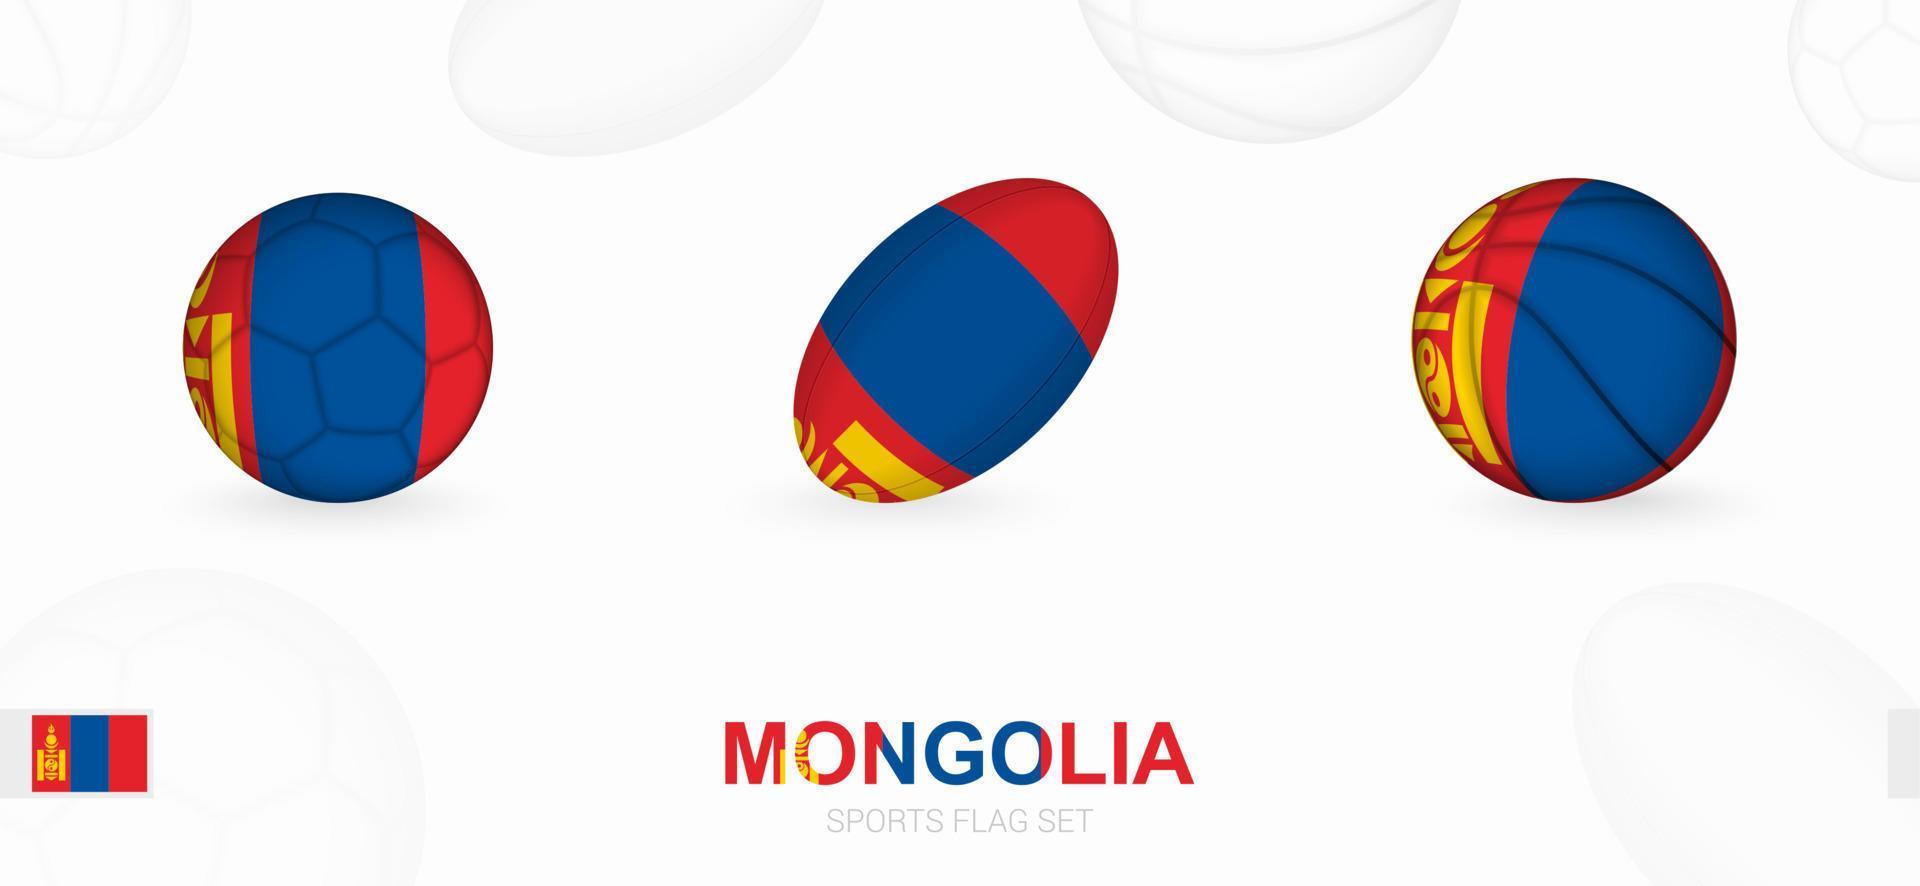 sport- pictogrammen voor Amerikaans voetbal, rugby en basketbal met de vlag van Mongolië. vector